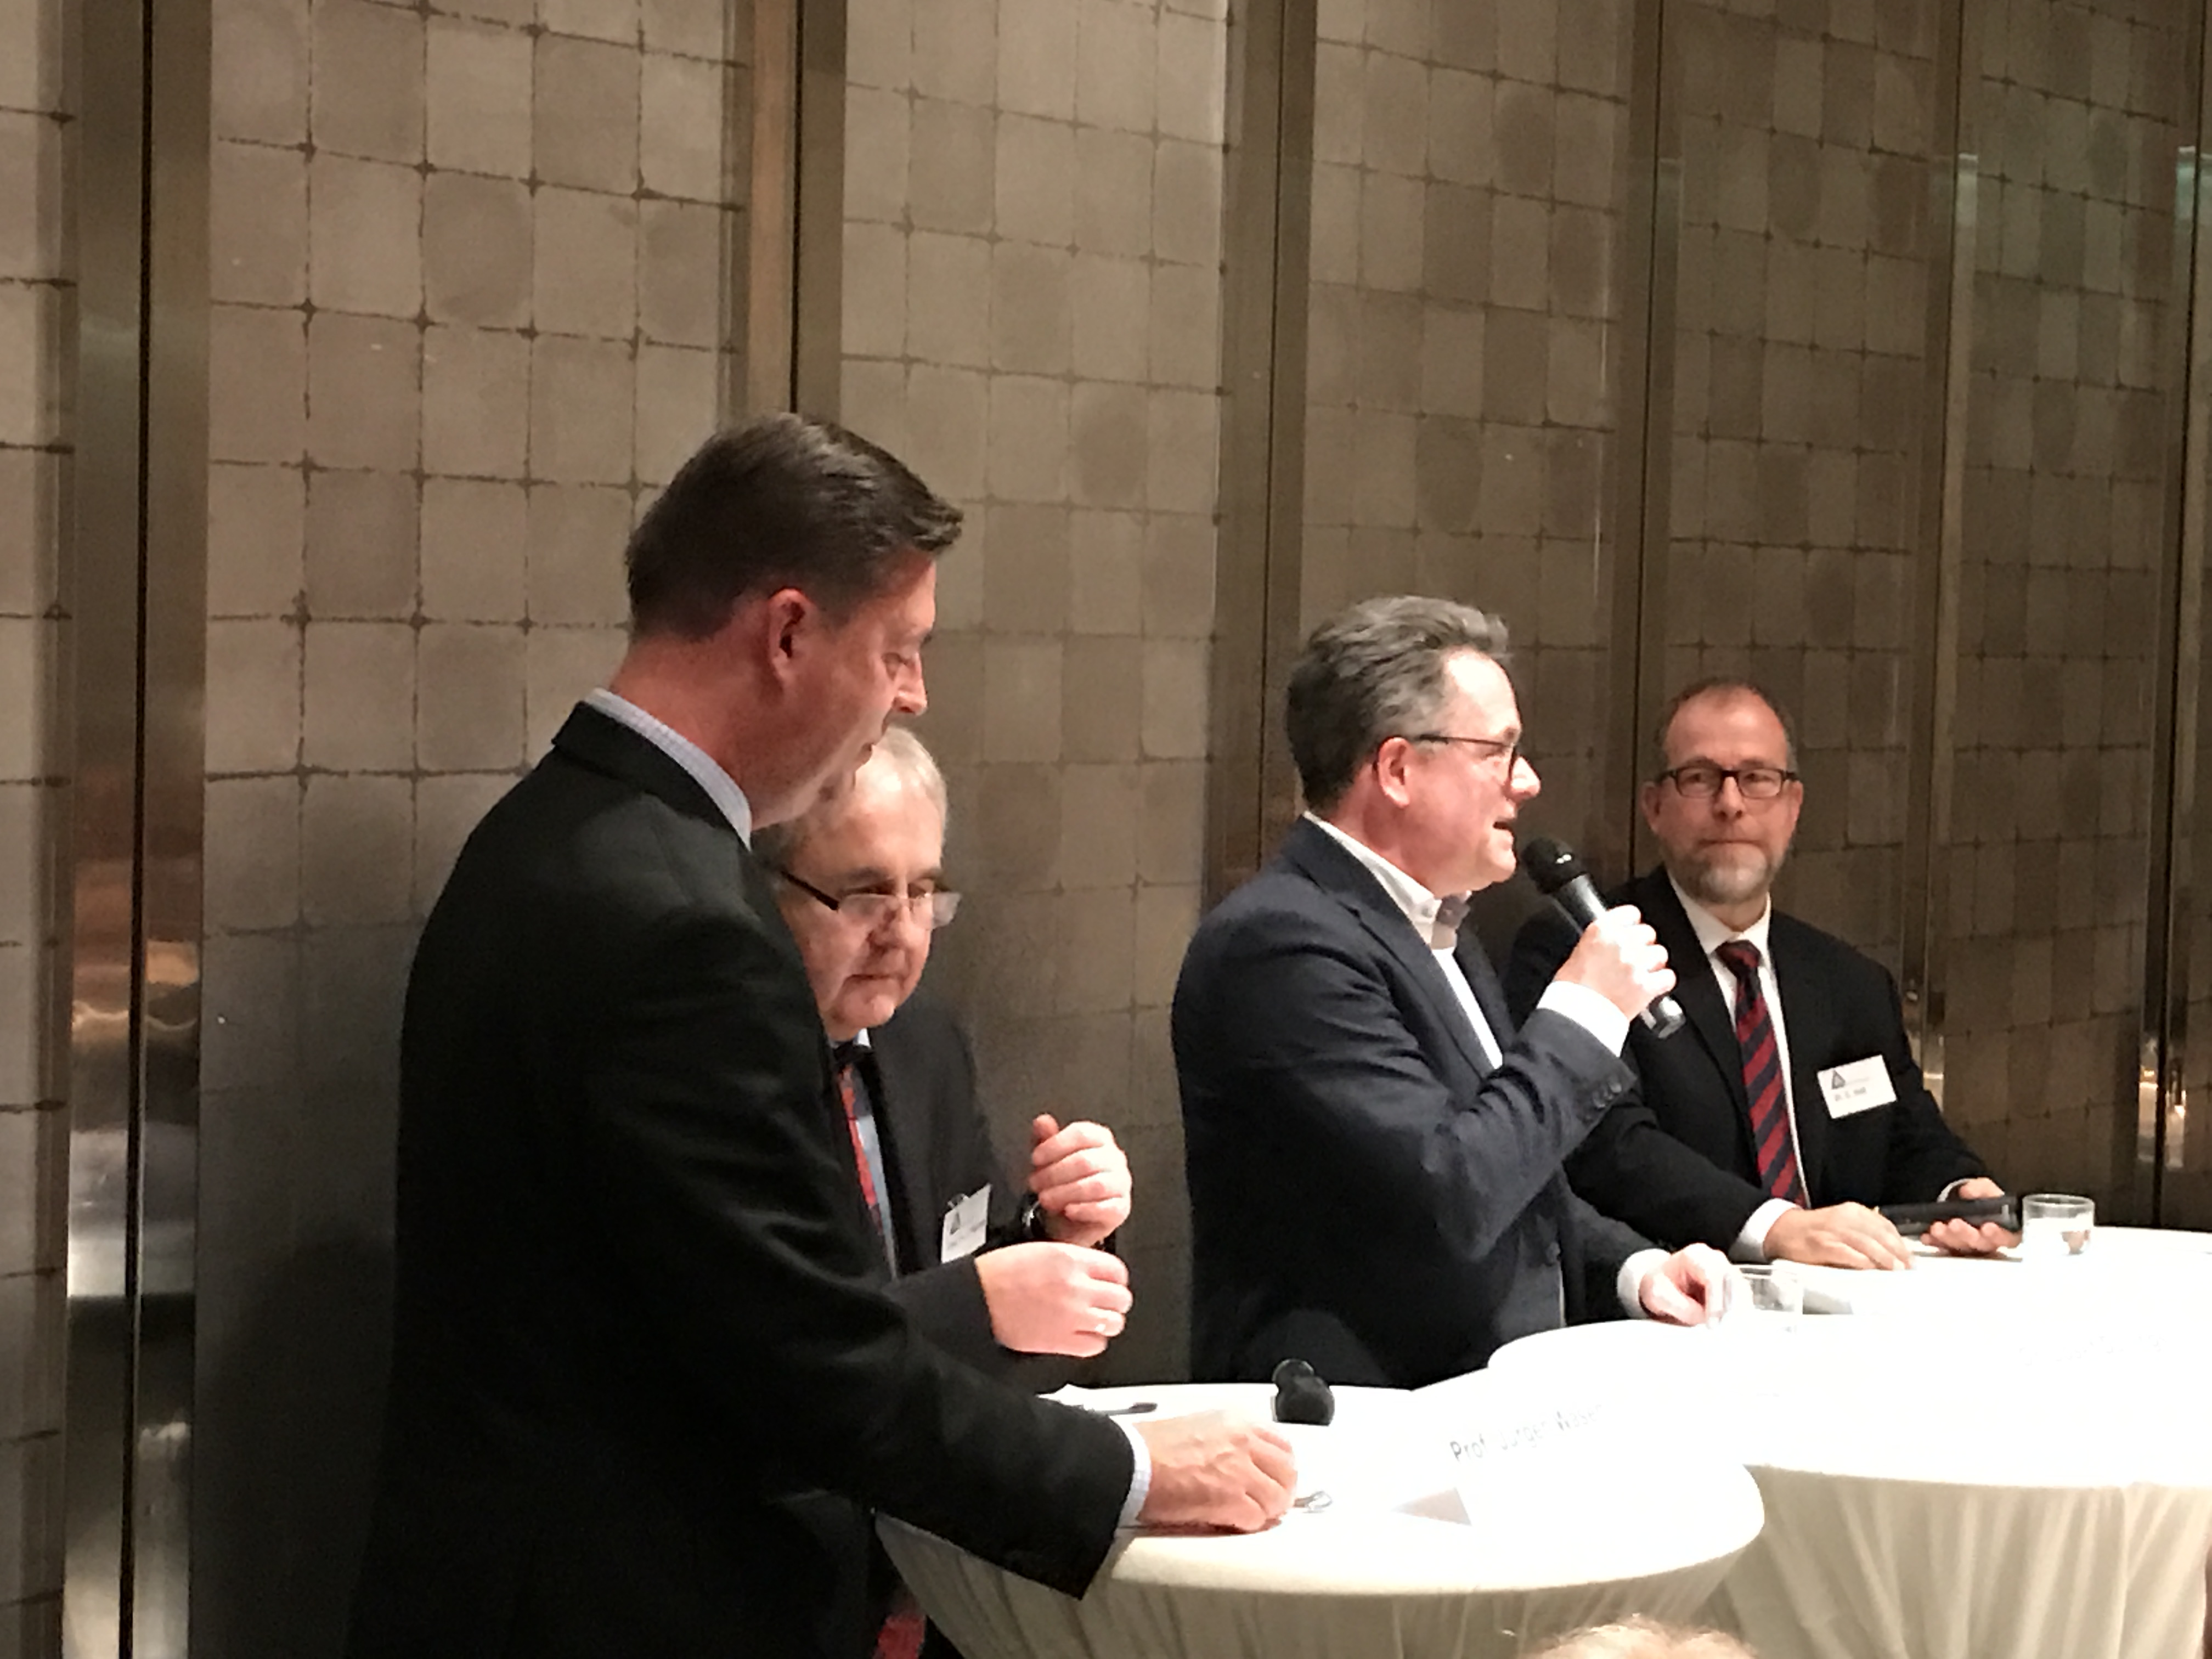 Dinner Match zw. Prof. Dr. Jürgen Wasem und Dr. Christof Veit mit Dr. Josef Düllings als Referee